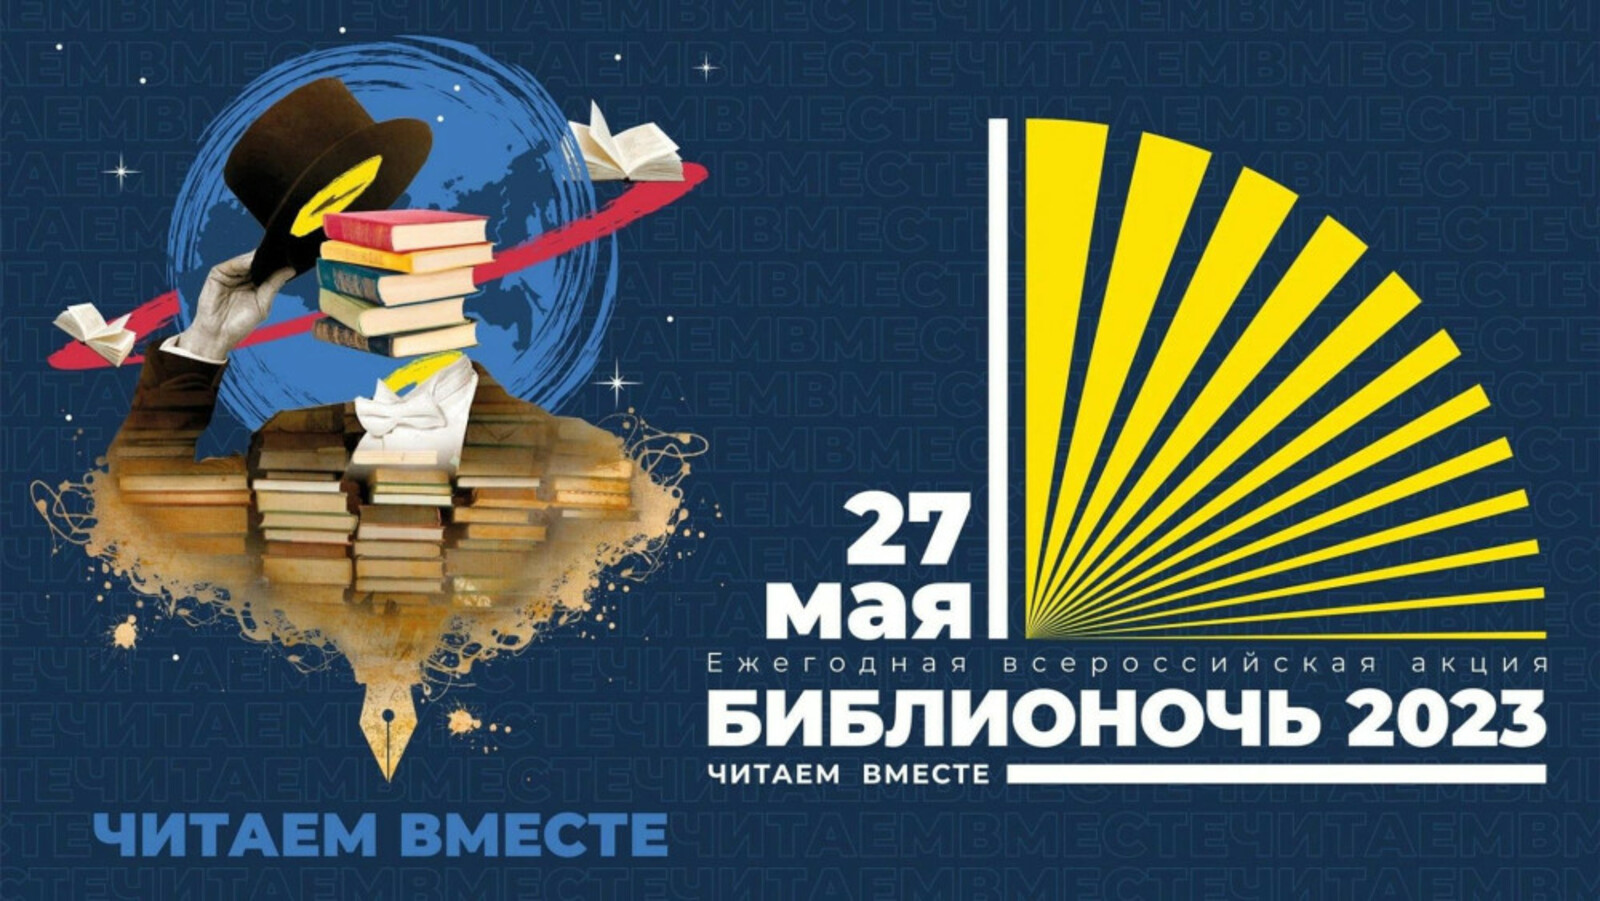 В Башкирии в рамках международной ярмарки «Китап-байрам» пройдет «Библионочь-2023»